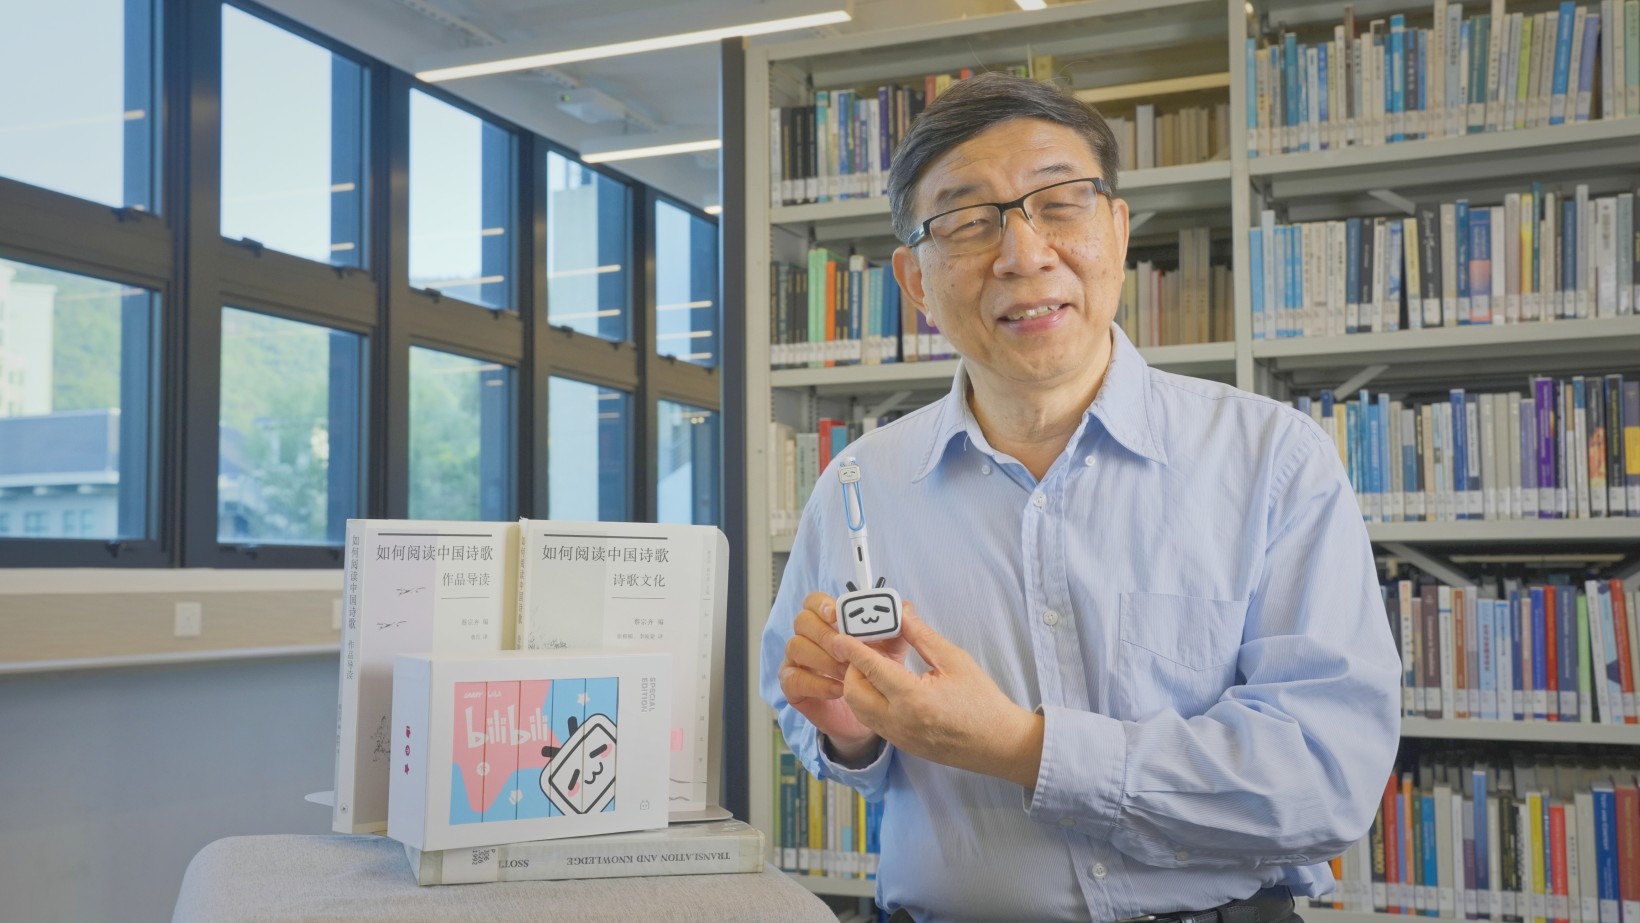 岭大中国文化高等研究院院长蔡宗齐教授策划主持《如何阅读中国诗歌》。